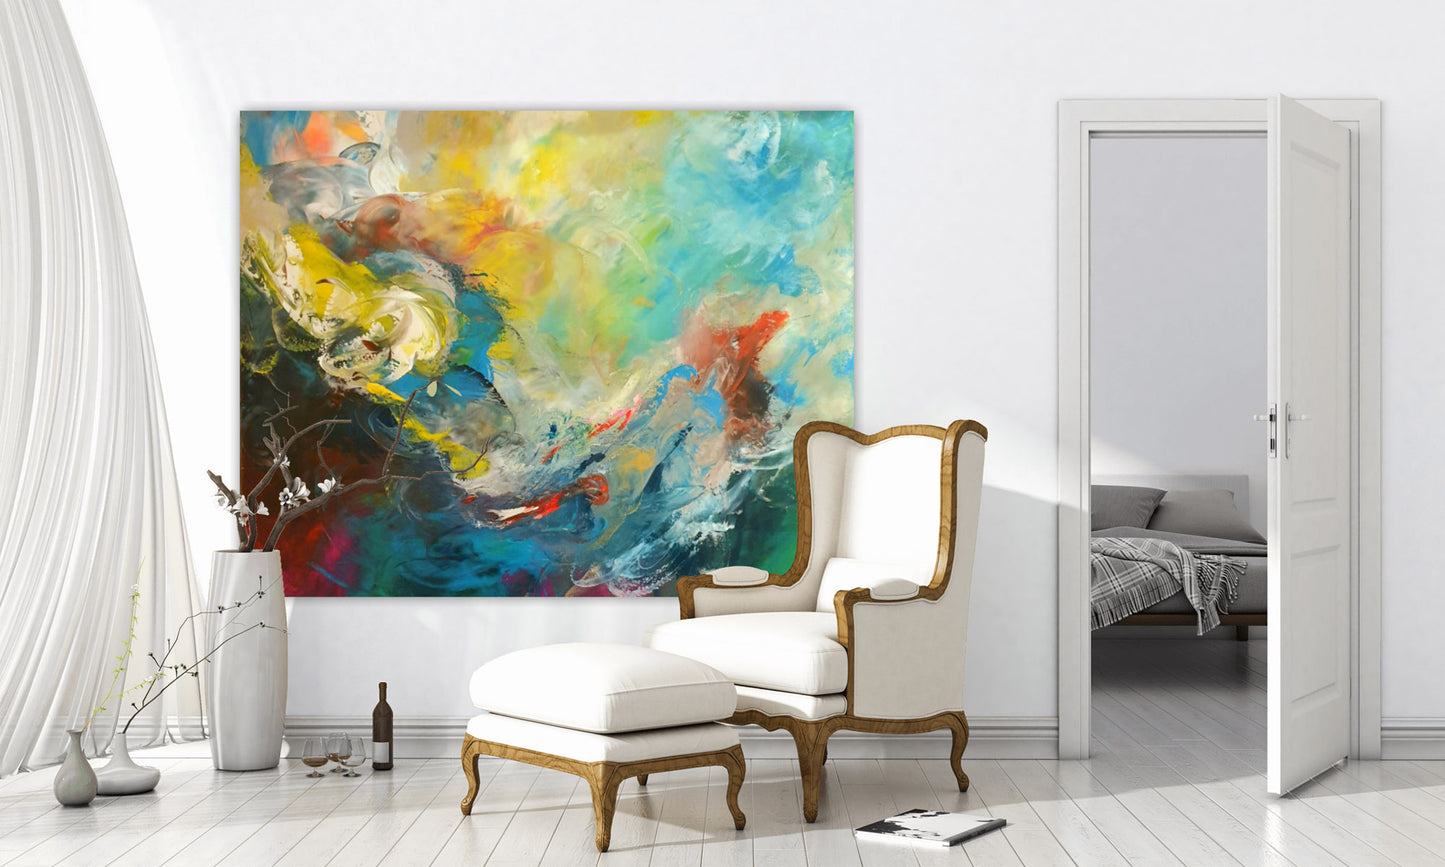 Wandteppich FOREST GUMP an weißer Wand hinter stilvollem Sessel mit Fußhocker  neben einem Fenster mit wehender Gardine und weißer hoher Bodenvase